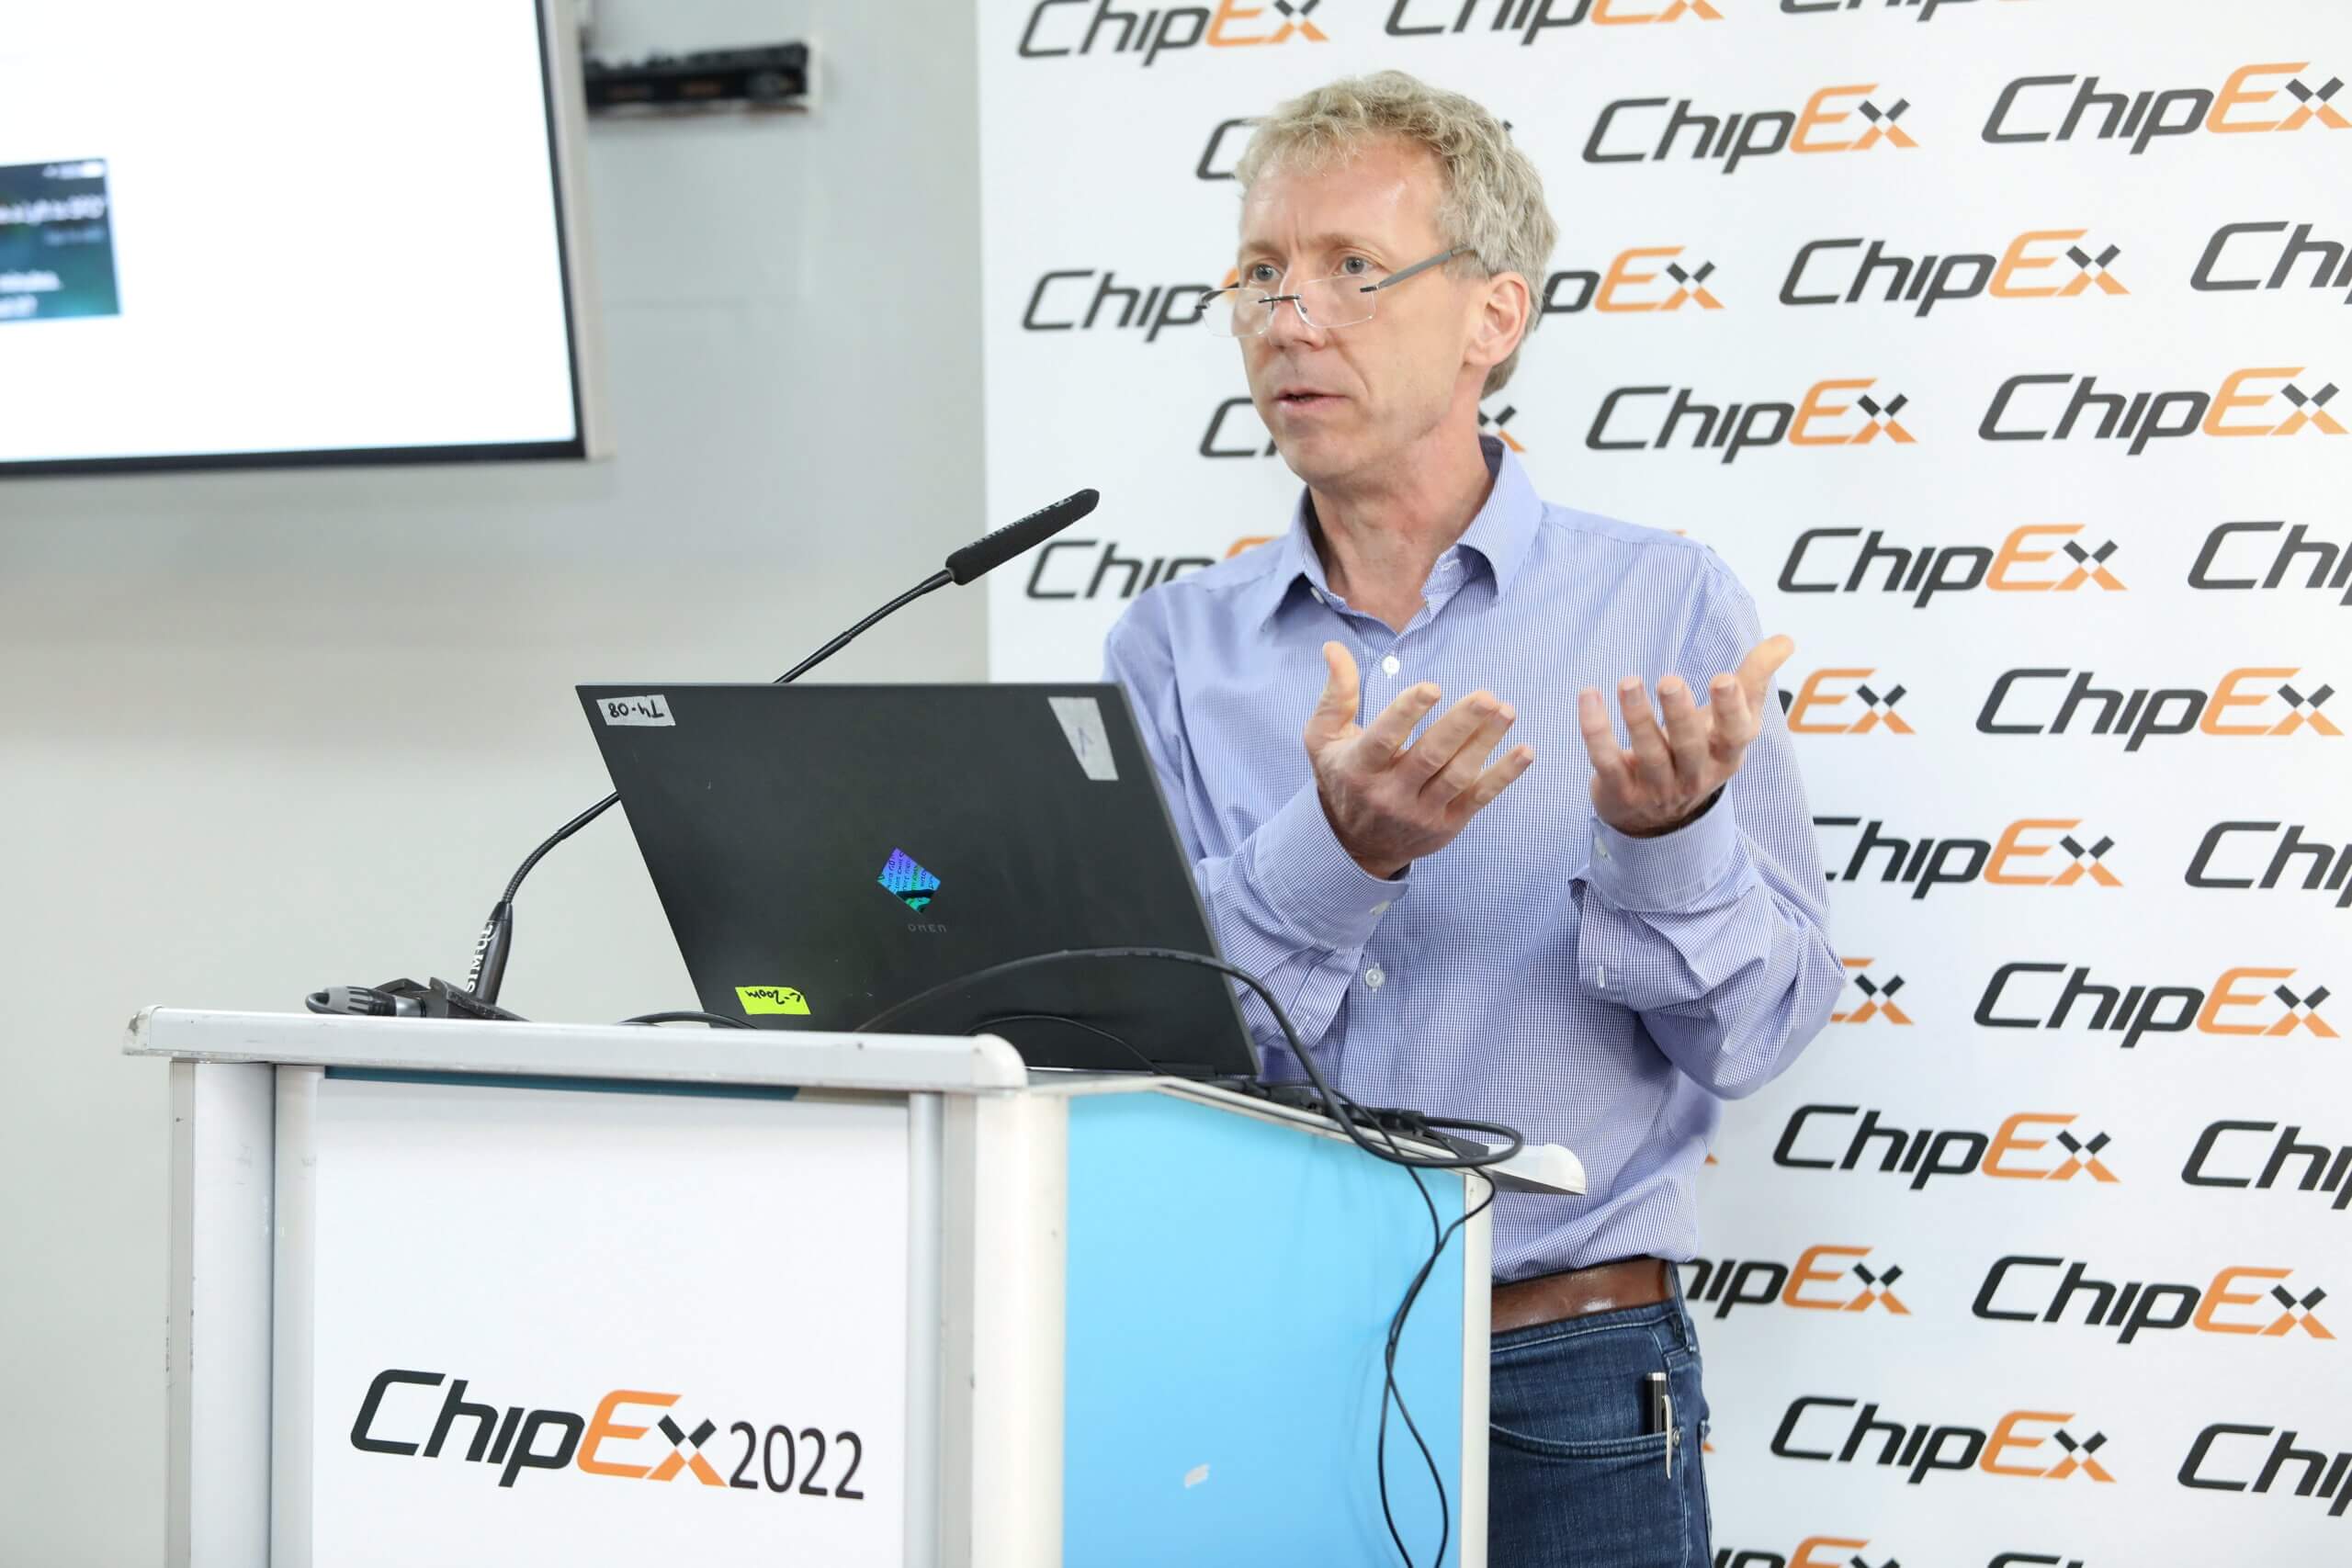 פרופ' דייויד בלאו, אוניברסיטת מישיגן מרצה בכנס ChipEx2022 בת"א. 11/5/22. צילום: ניב קנטור